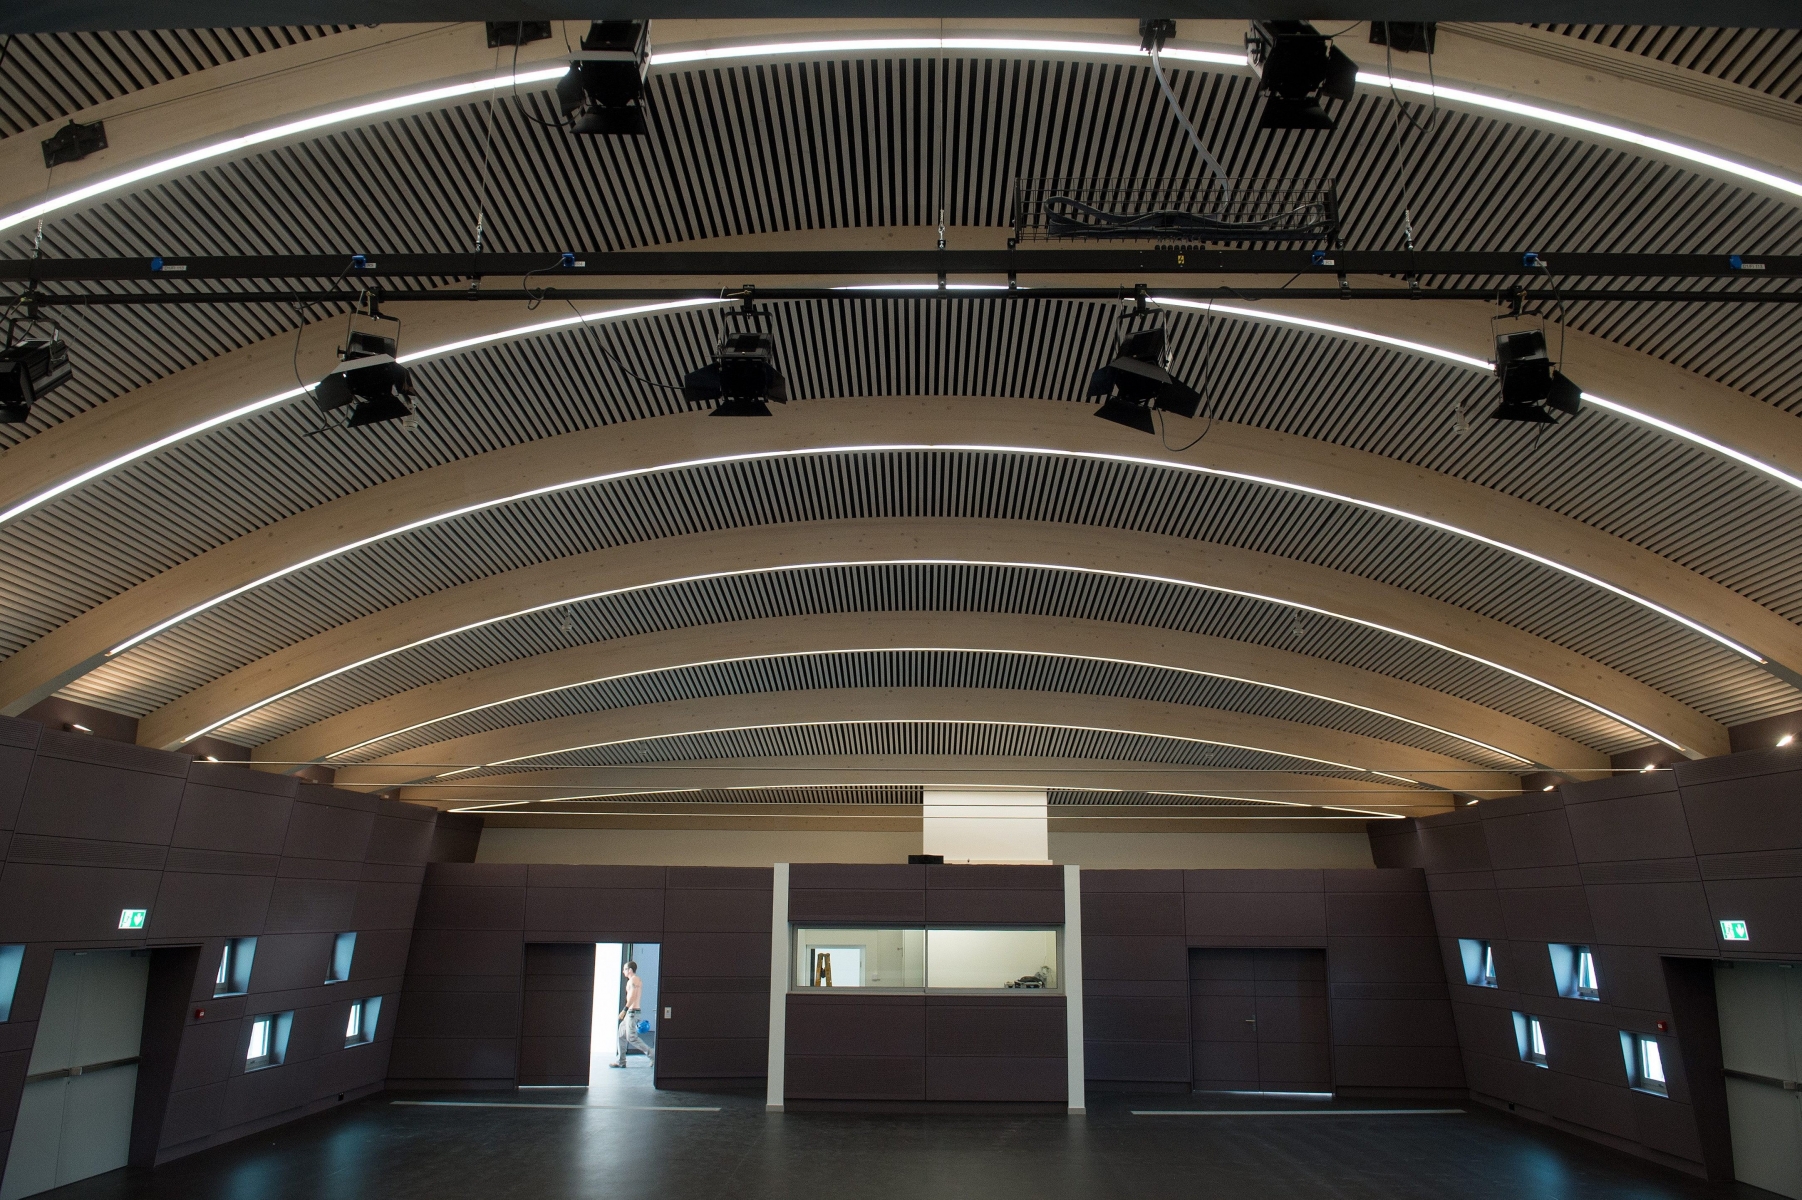 Salle polyvalente: la nouvelle salle de spectacle



cornaux, 08 09 2014

© Photo David Marchon CORNAUX